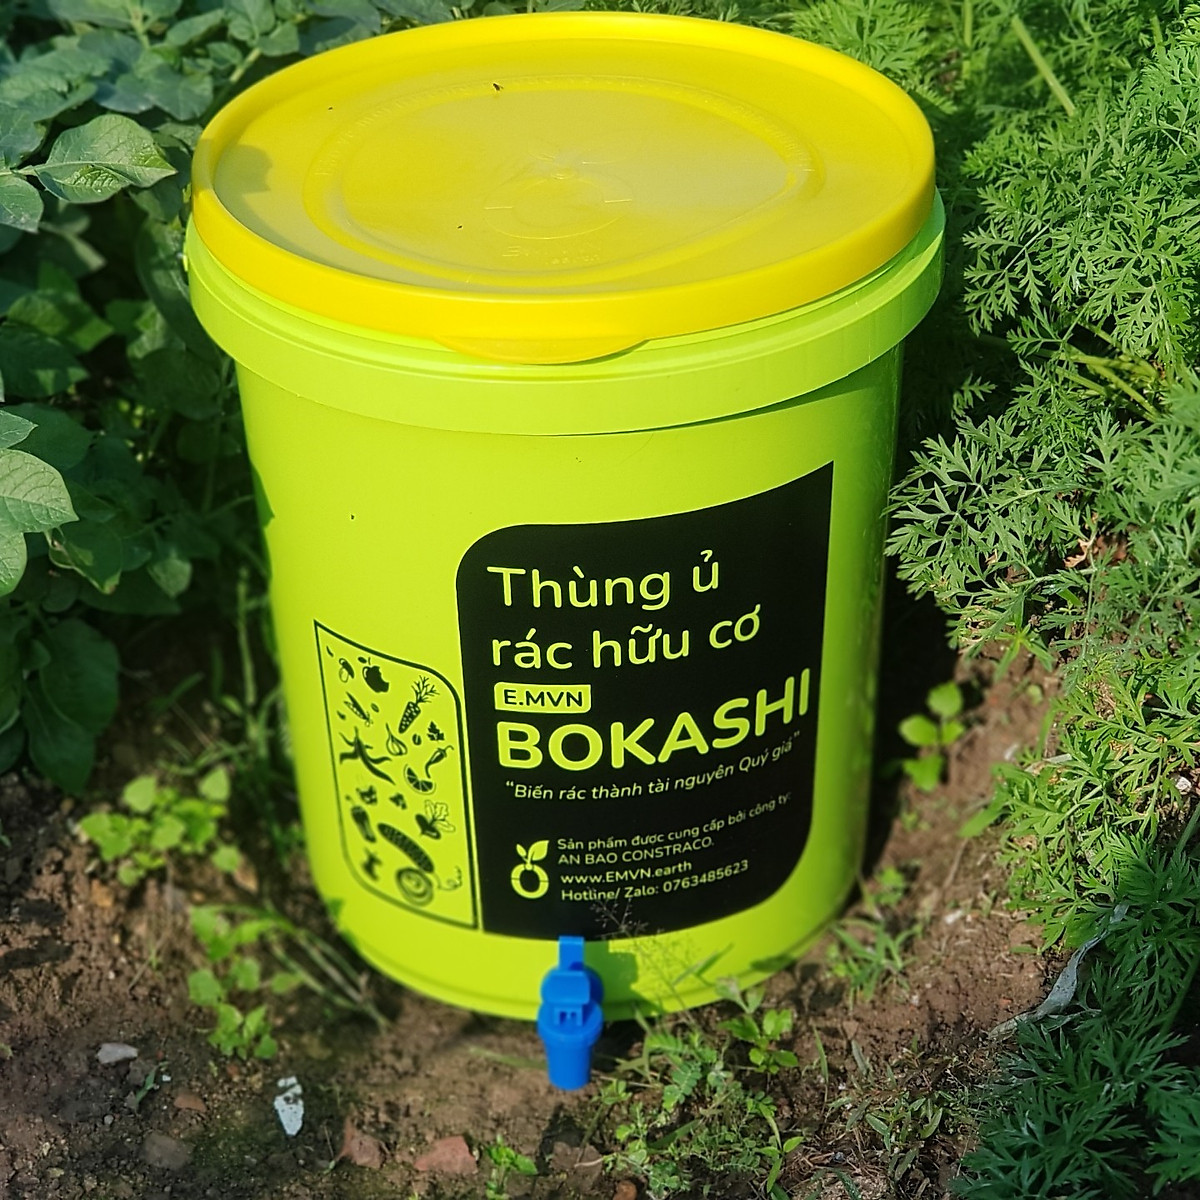 Combo thùng ủ rác hữu cơ Bokashi 2 thùng + 1 túi Bokashi